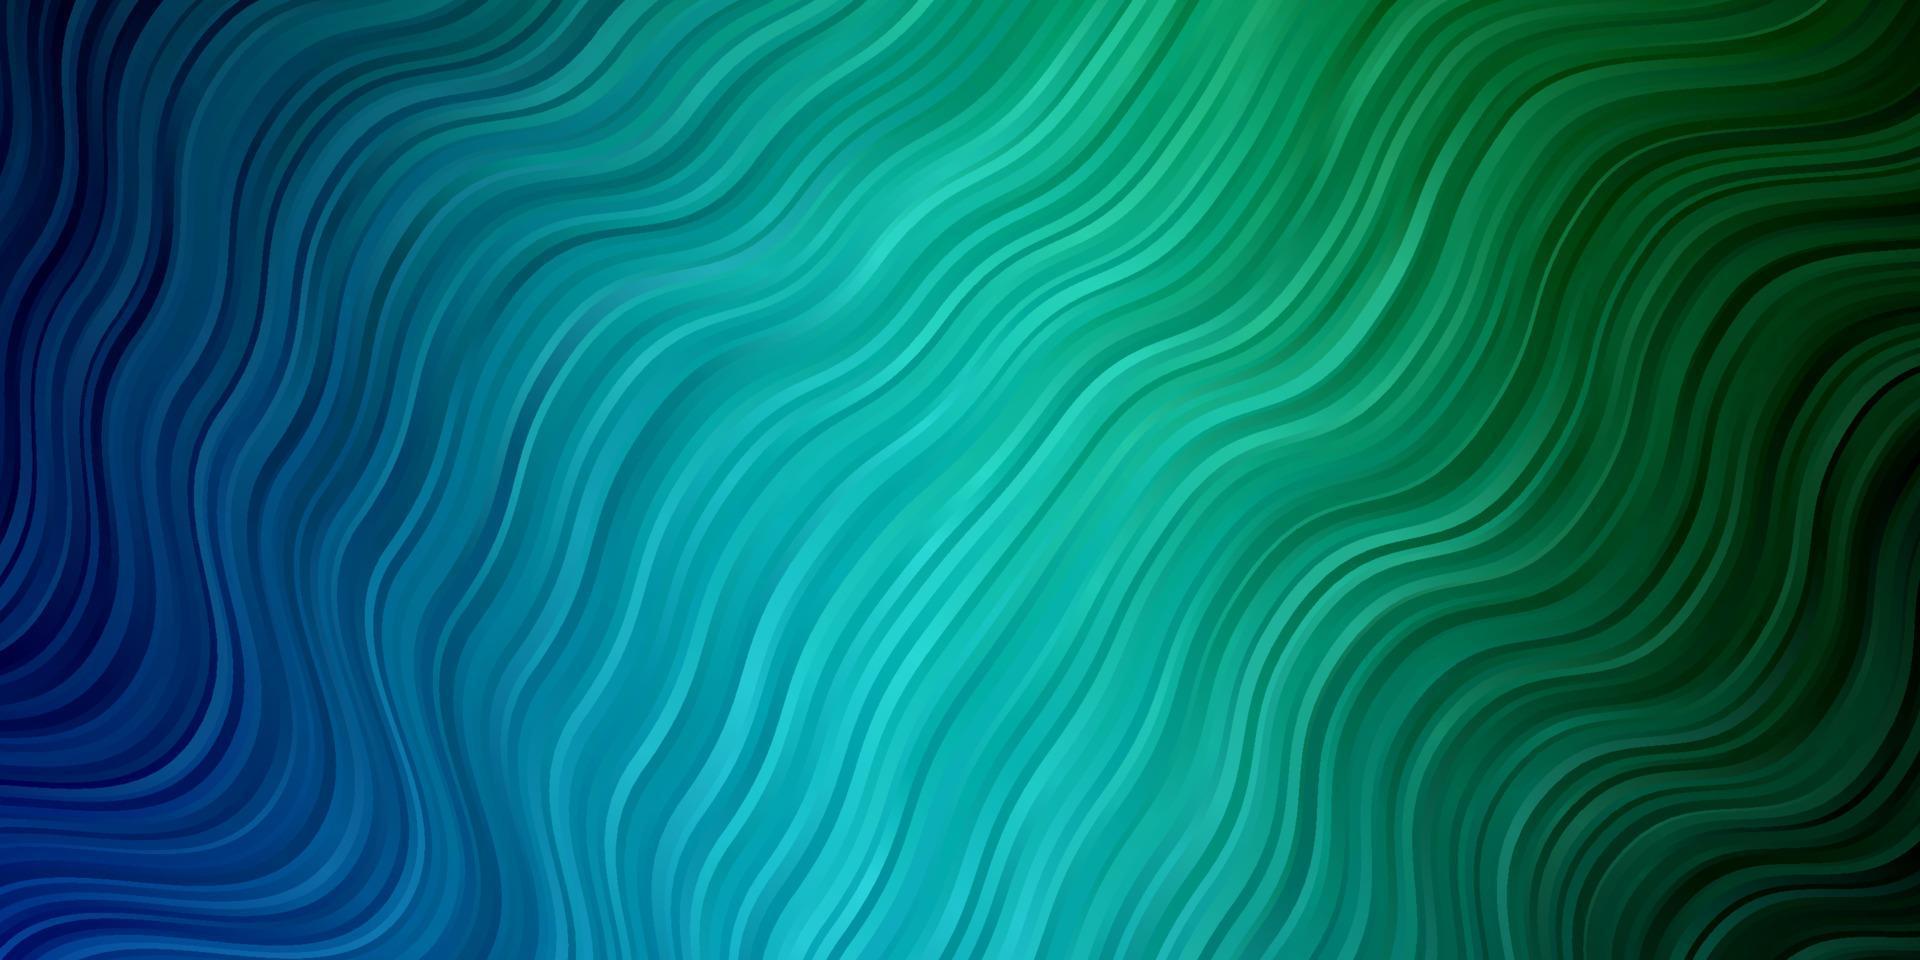 padrão de vetor azul e verde claro com linhas curvas.